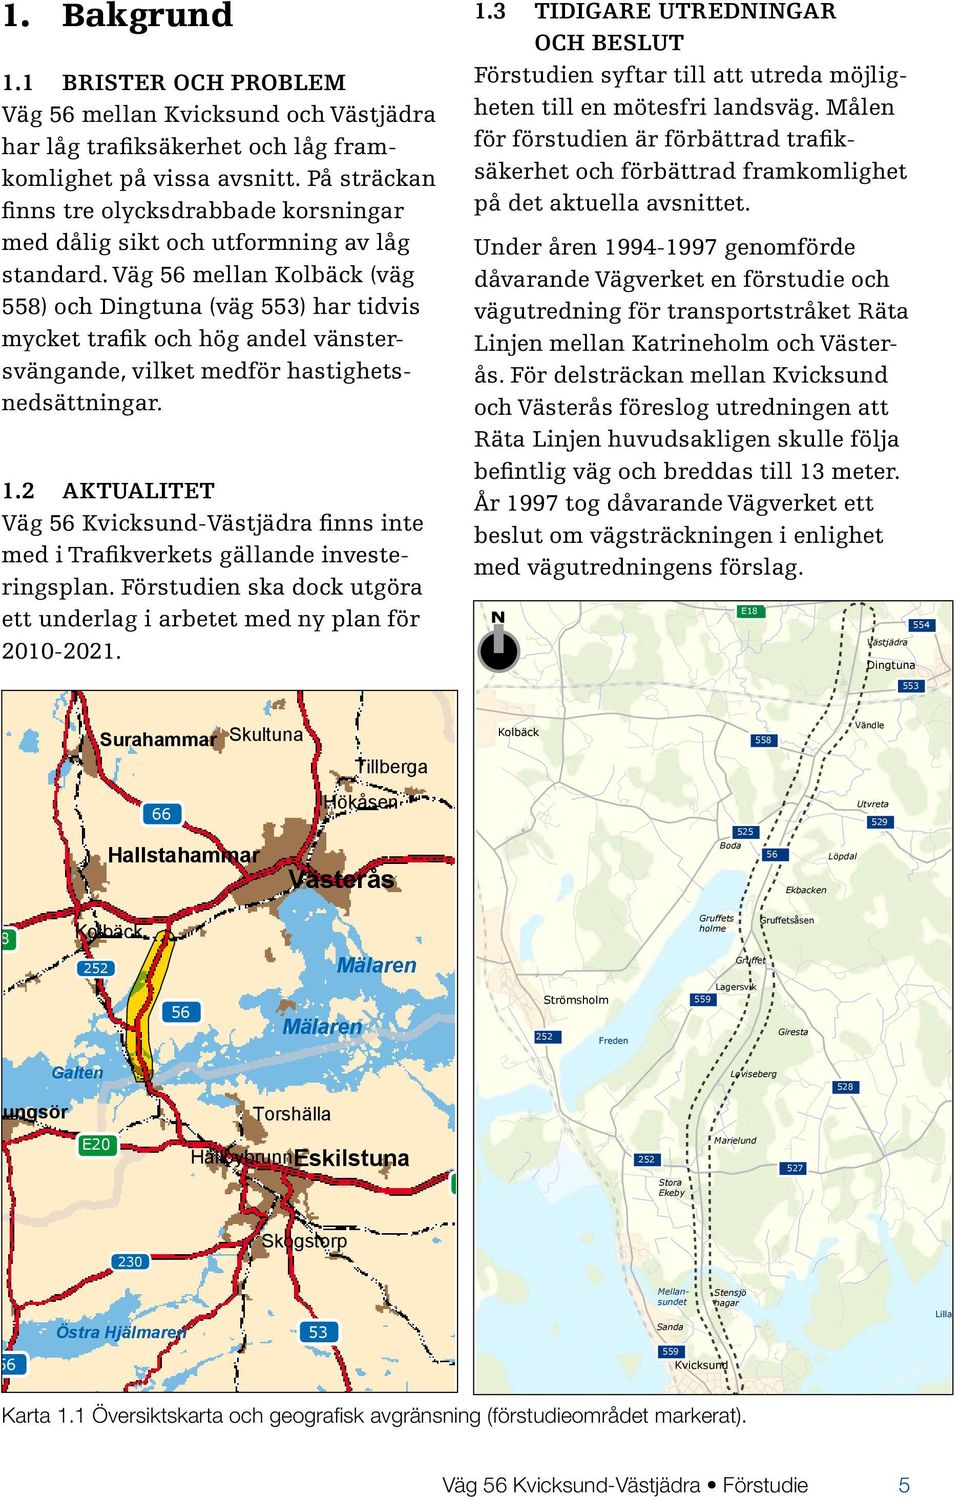 Väg 56 mellan Kolbäck (väg 558) och Dingtuna (väg 553) har tidvis mycket trafik och hög andel vänstersvängande, vilket medför hastighetsnedsättningar. Sala 1.